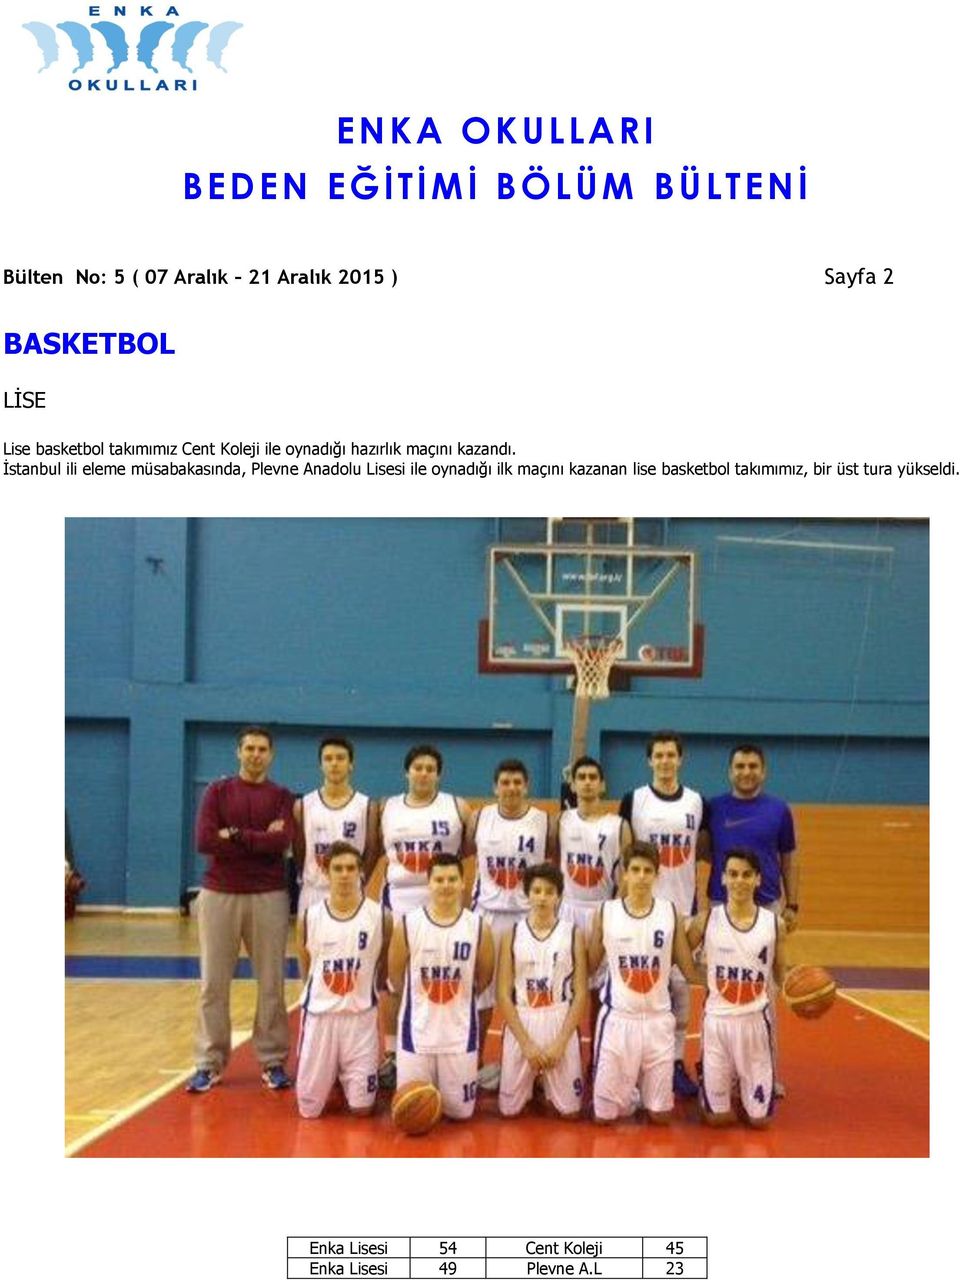 İstanbul ili eleme müsabakasında, Plevne Anadolu Lisesi ile oynadığı ilk maçını